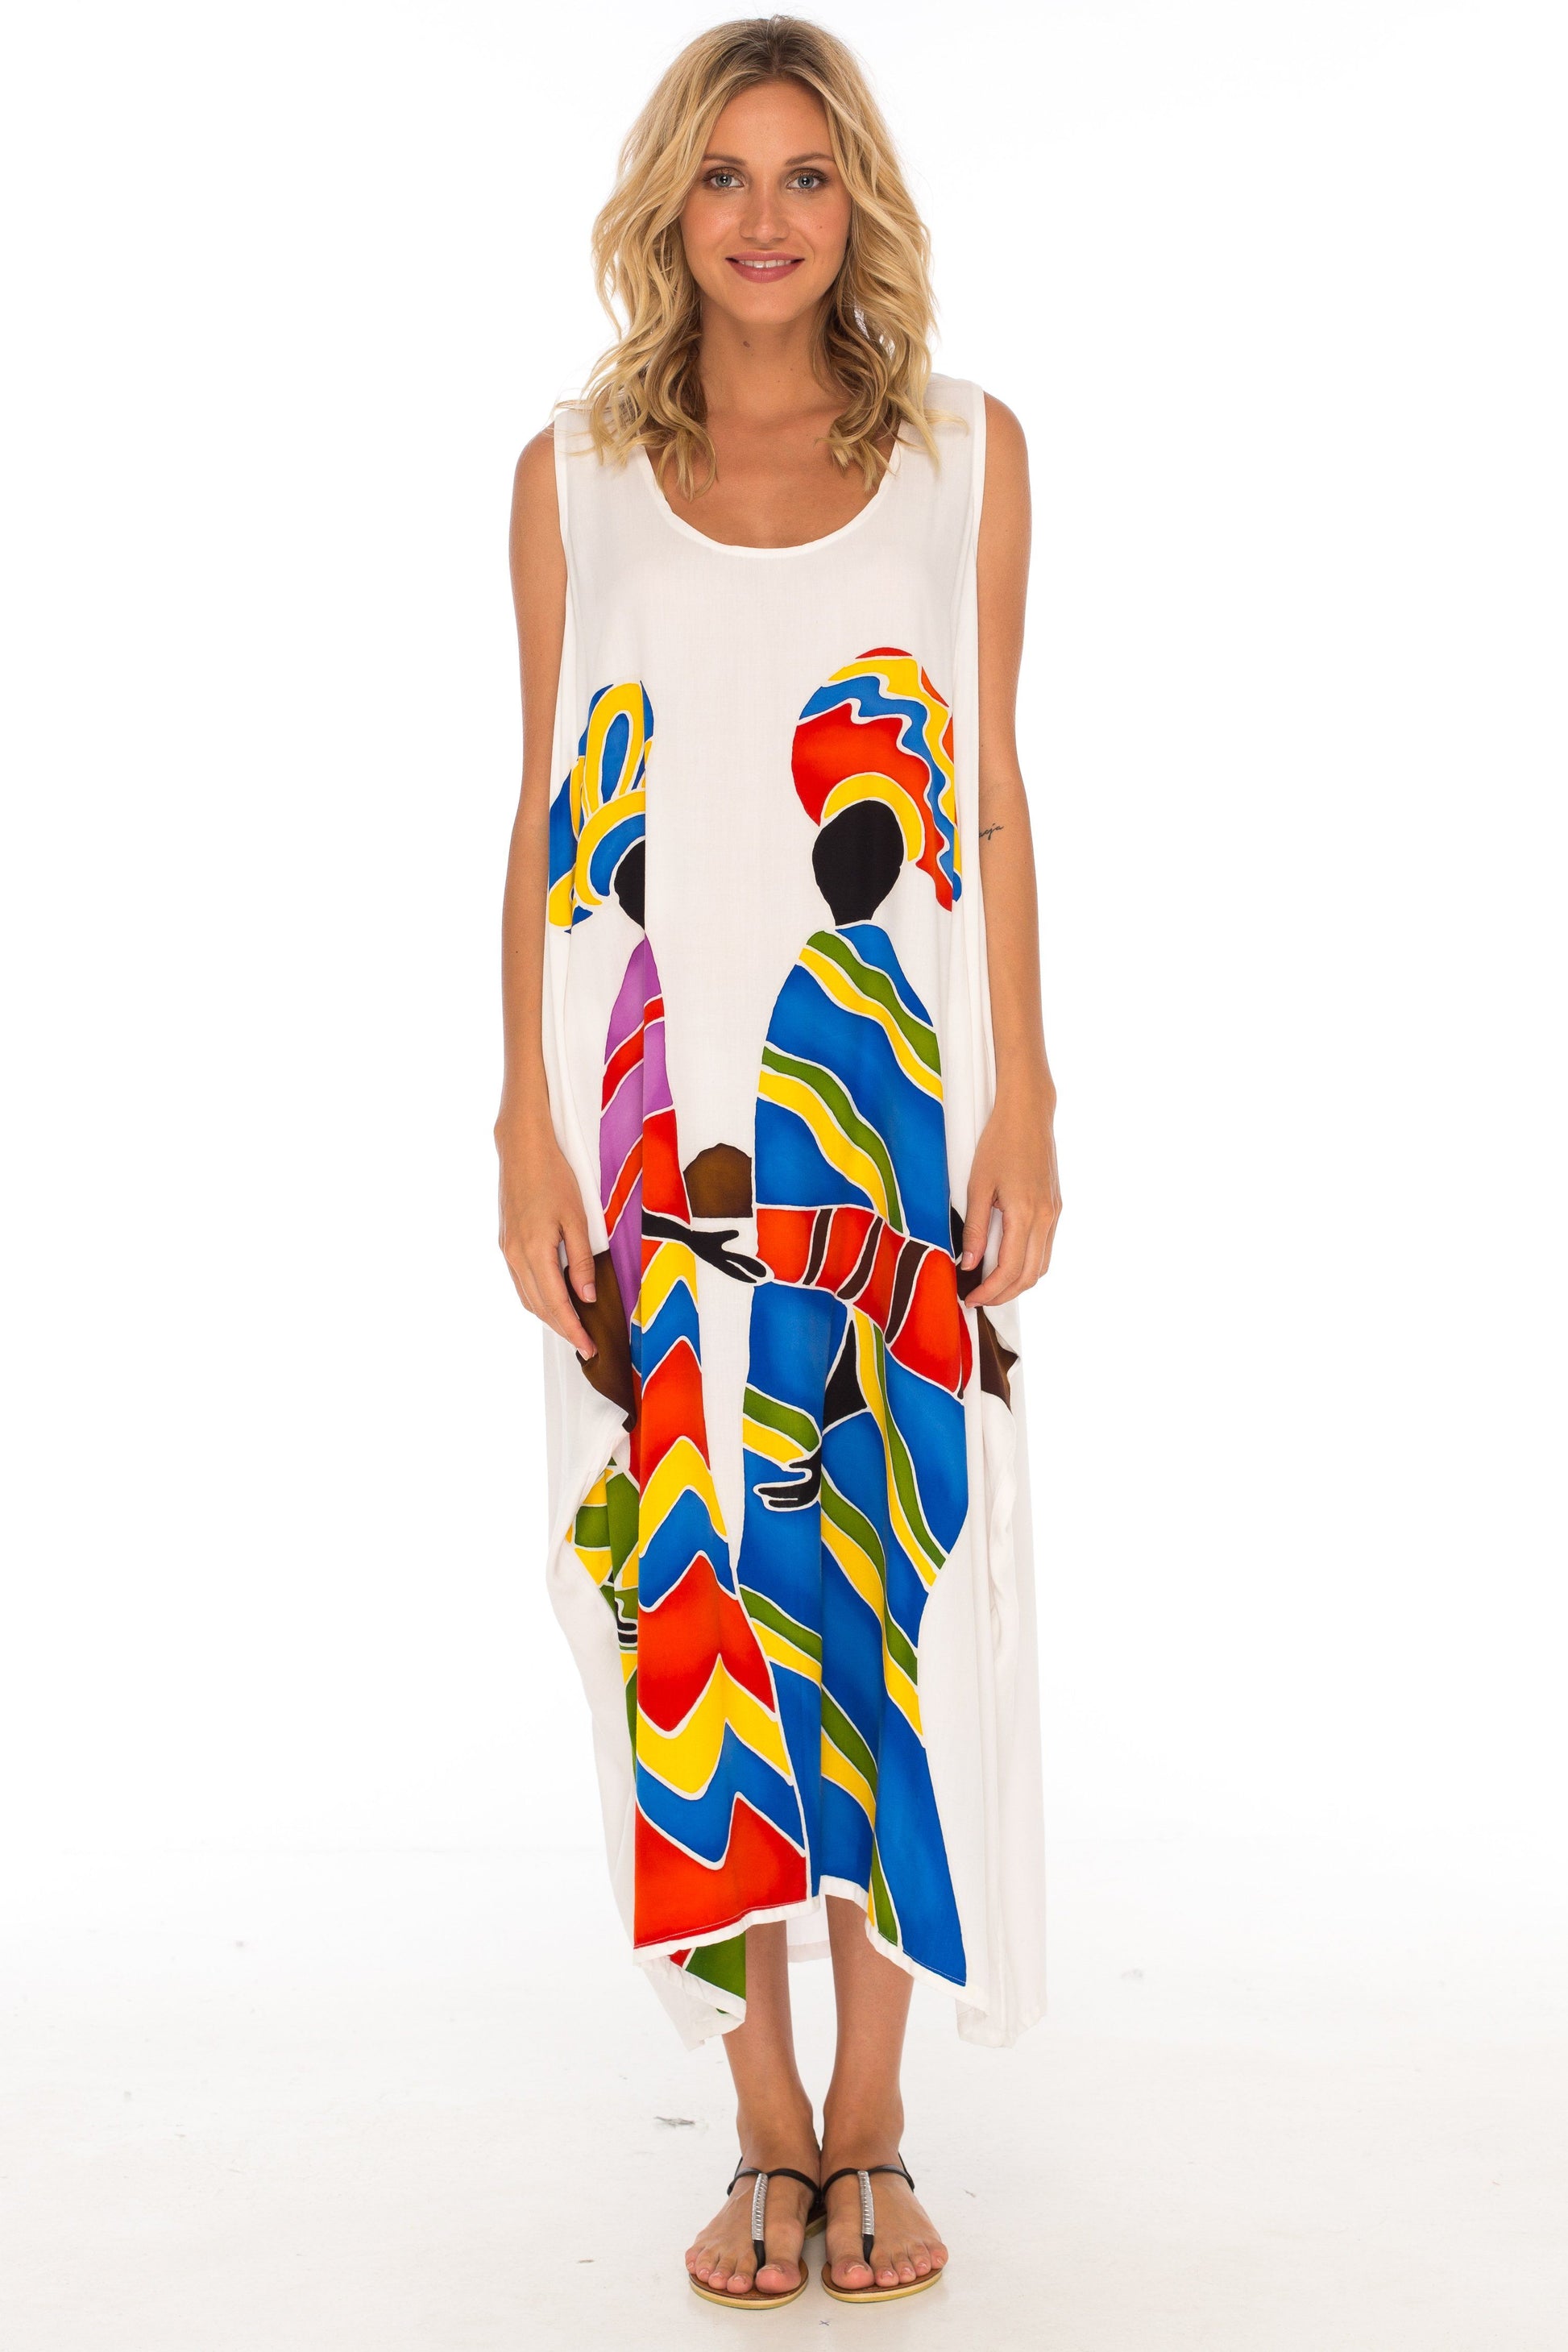 Hand Painted Tribal Design Long Oversized summer Dress-Loveshushi-white